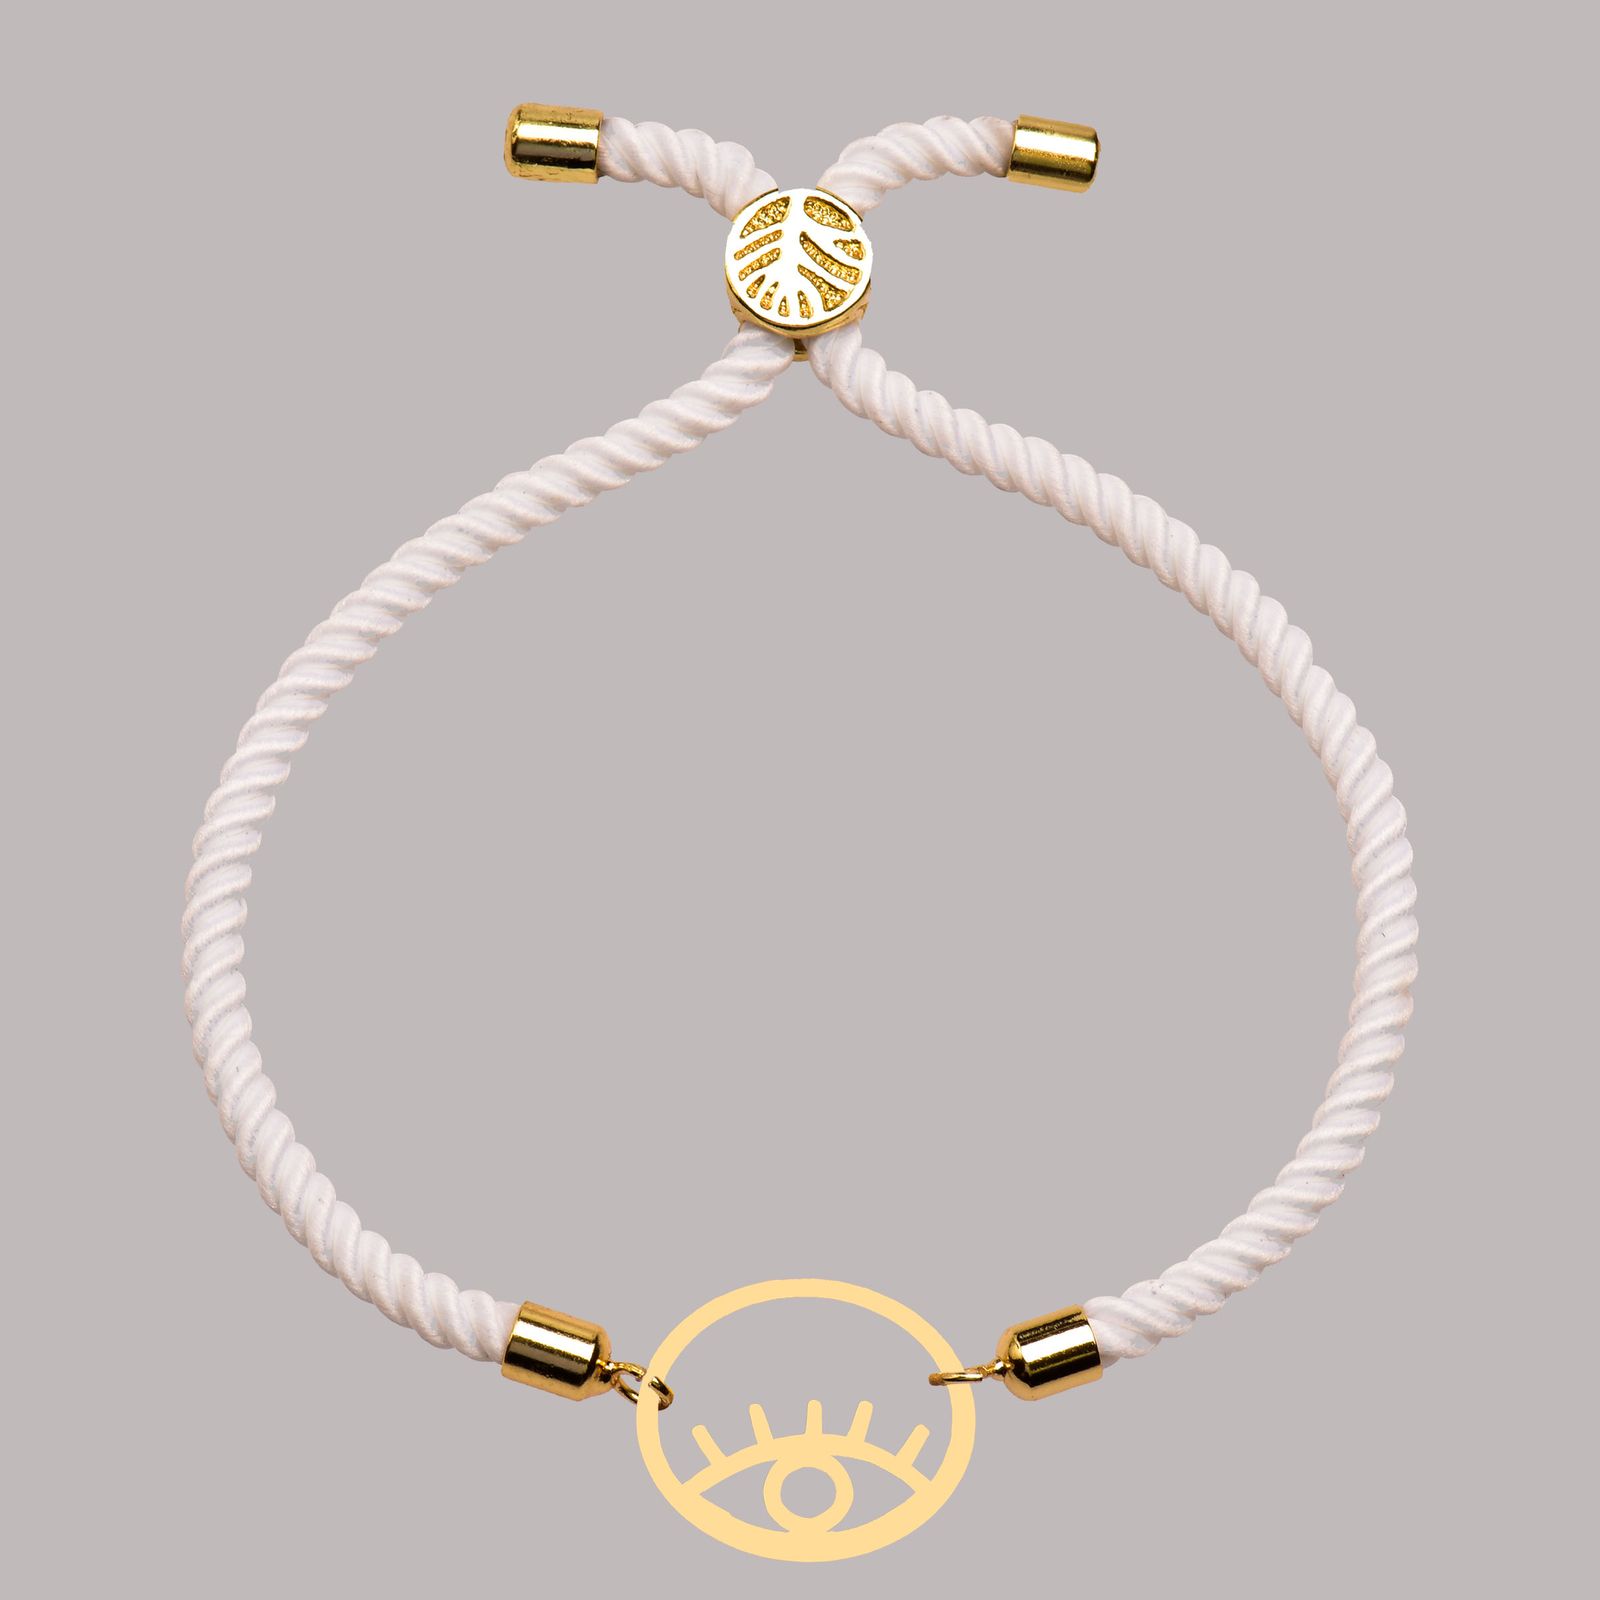 دستبند طلا 18 عیار زنانه کرابو طرح 18 مدل Kr102218 -  - 1